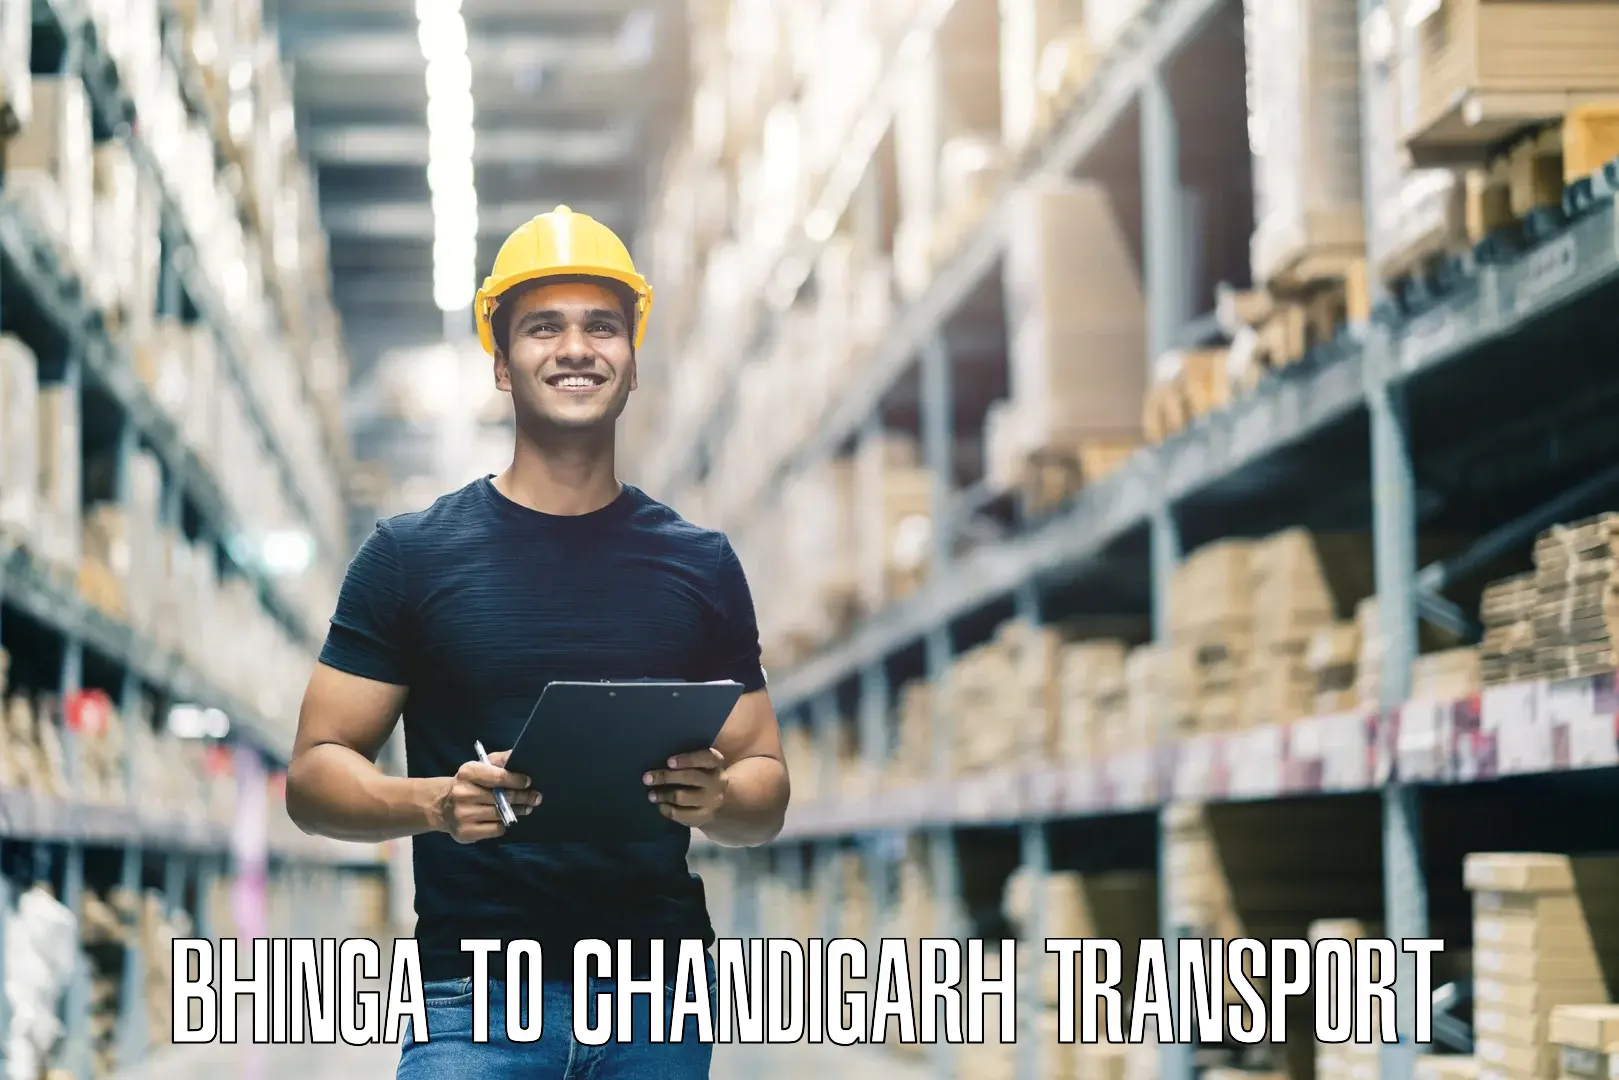 Cargo train transport services Bhinga to Chandigarh